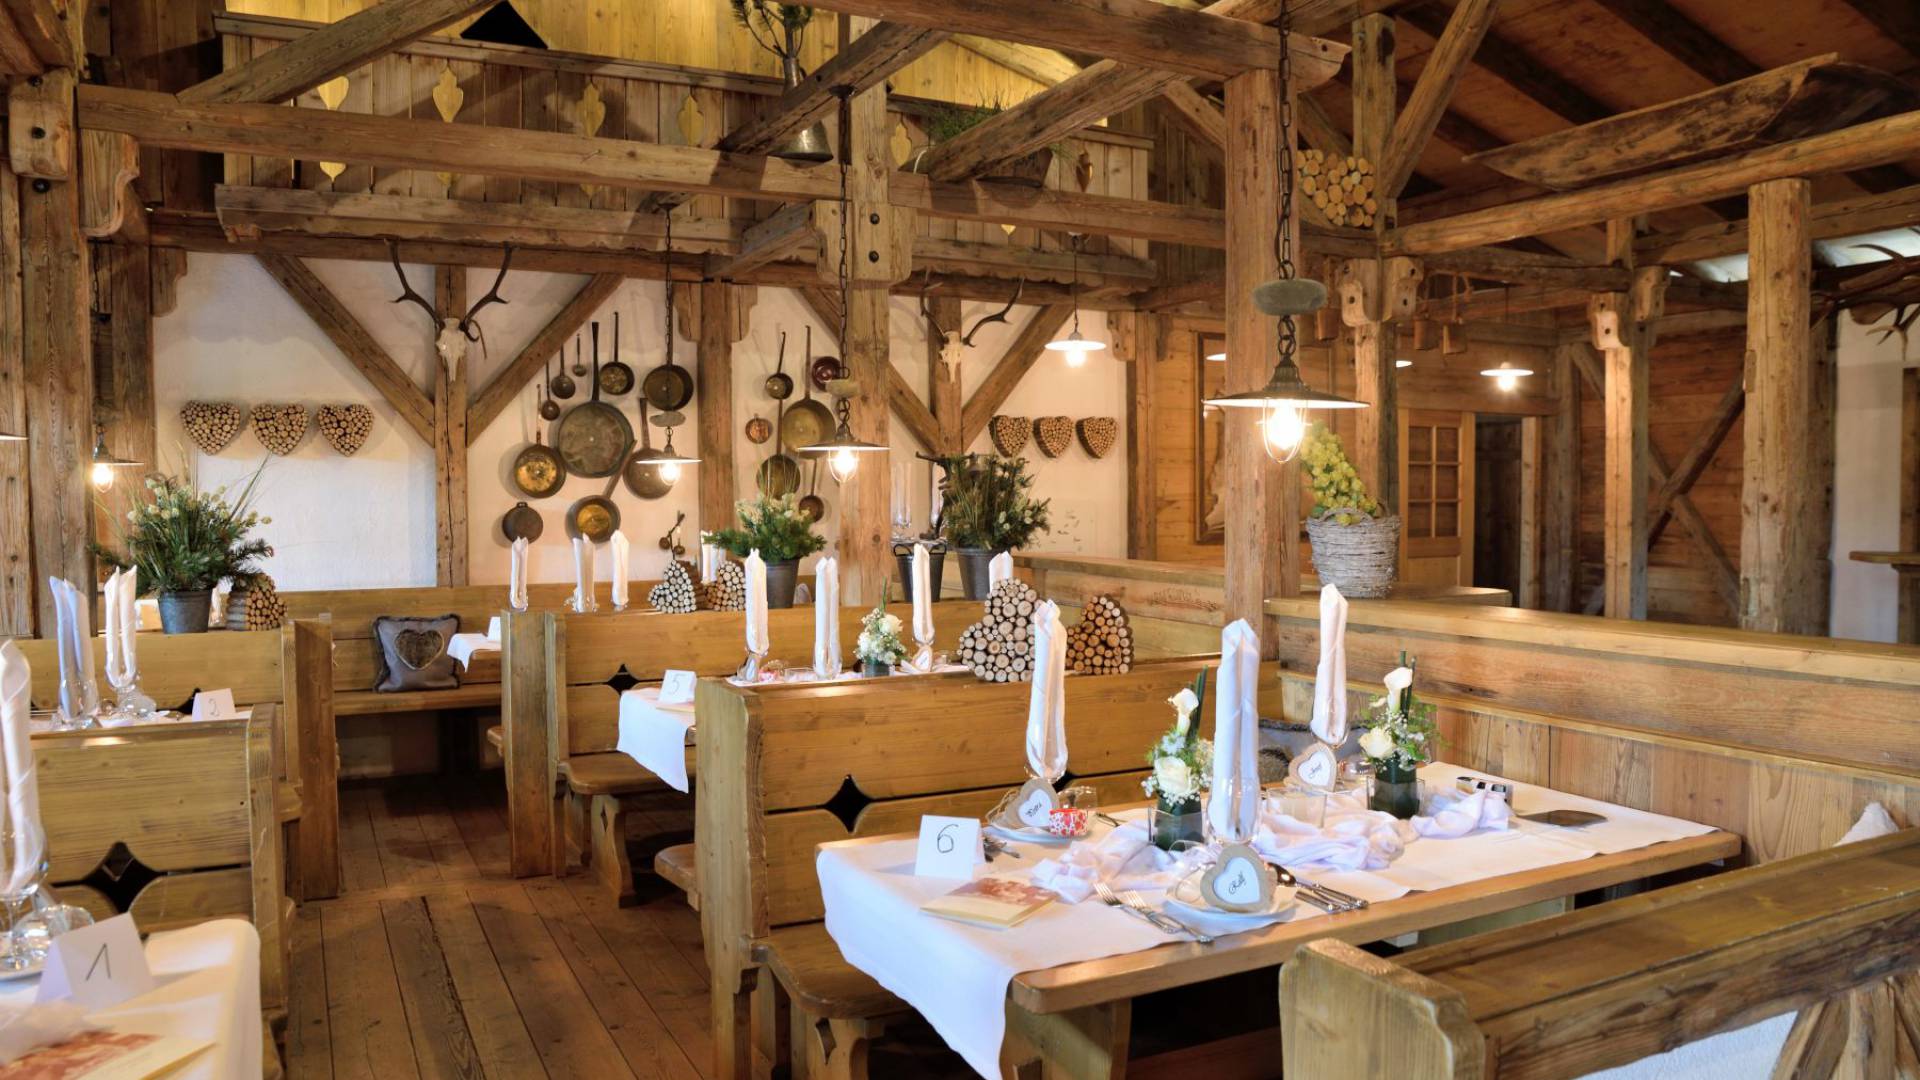 Traditionell eingerichtet Gaststube in Bayern